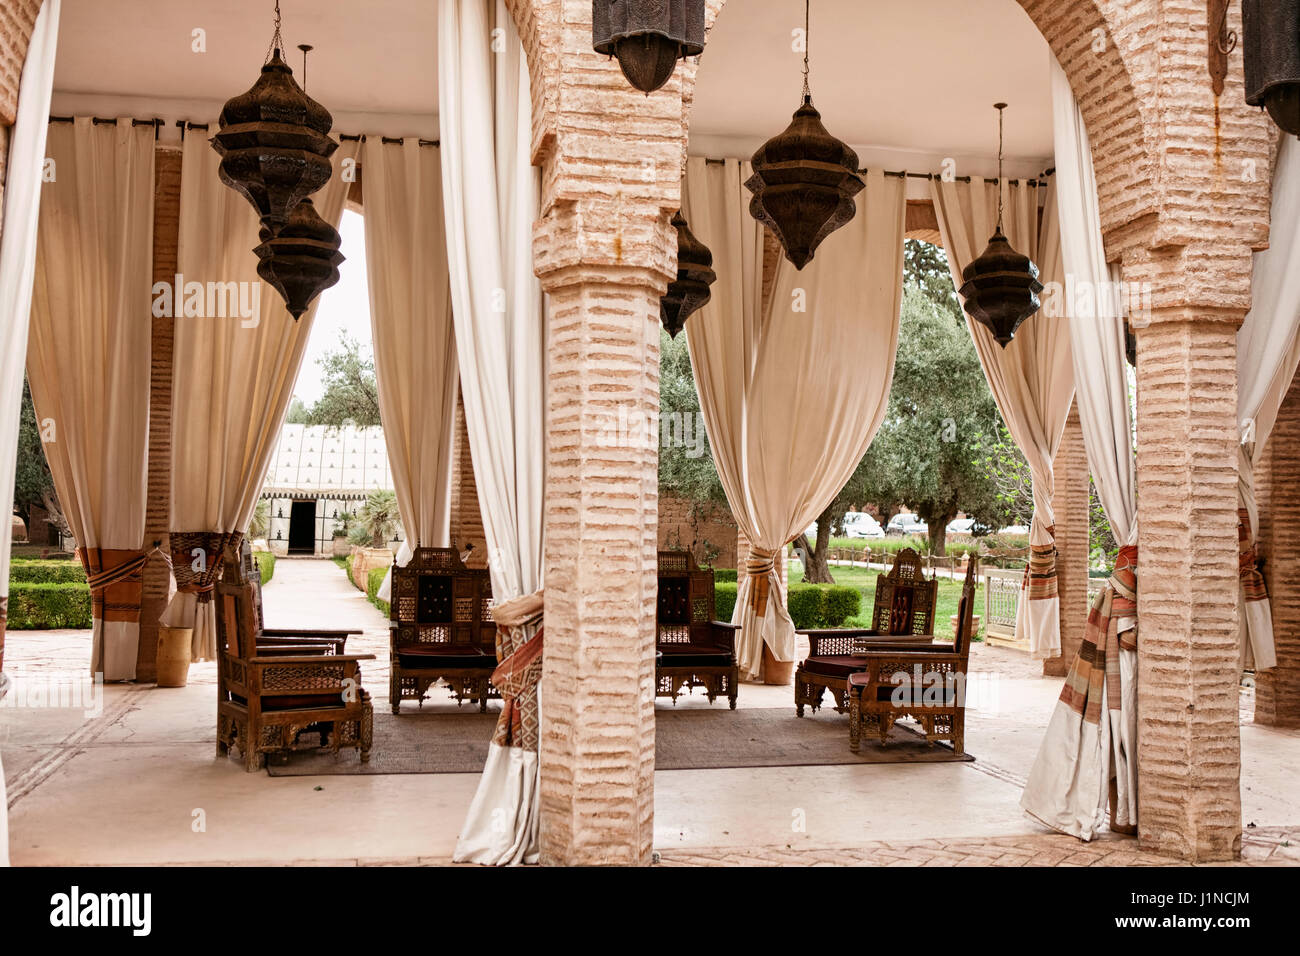 Salon traditionnel marocain. Il se compose de pièces de bois de meubles recouverts d'un tissu décoré, conception de forme arabe. Banque D'Images